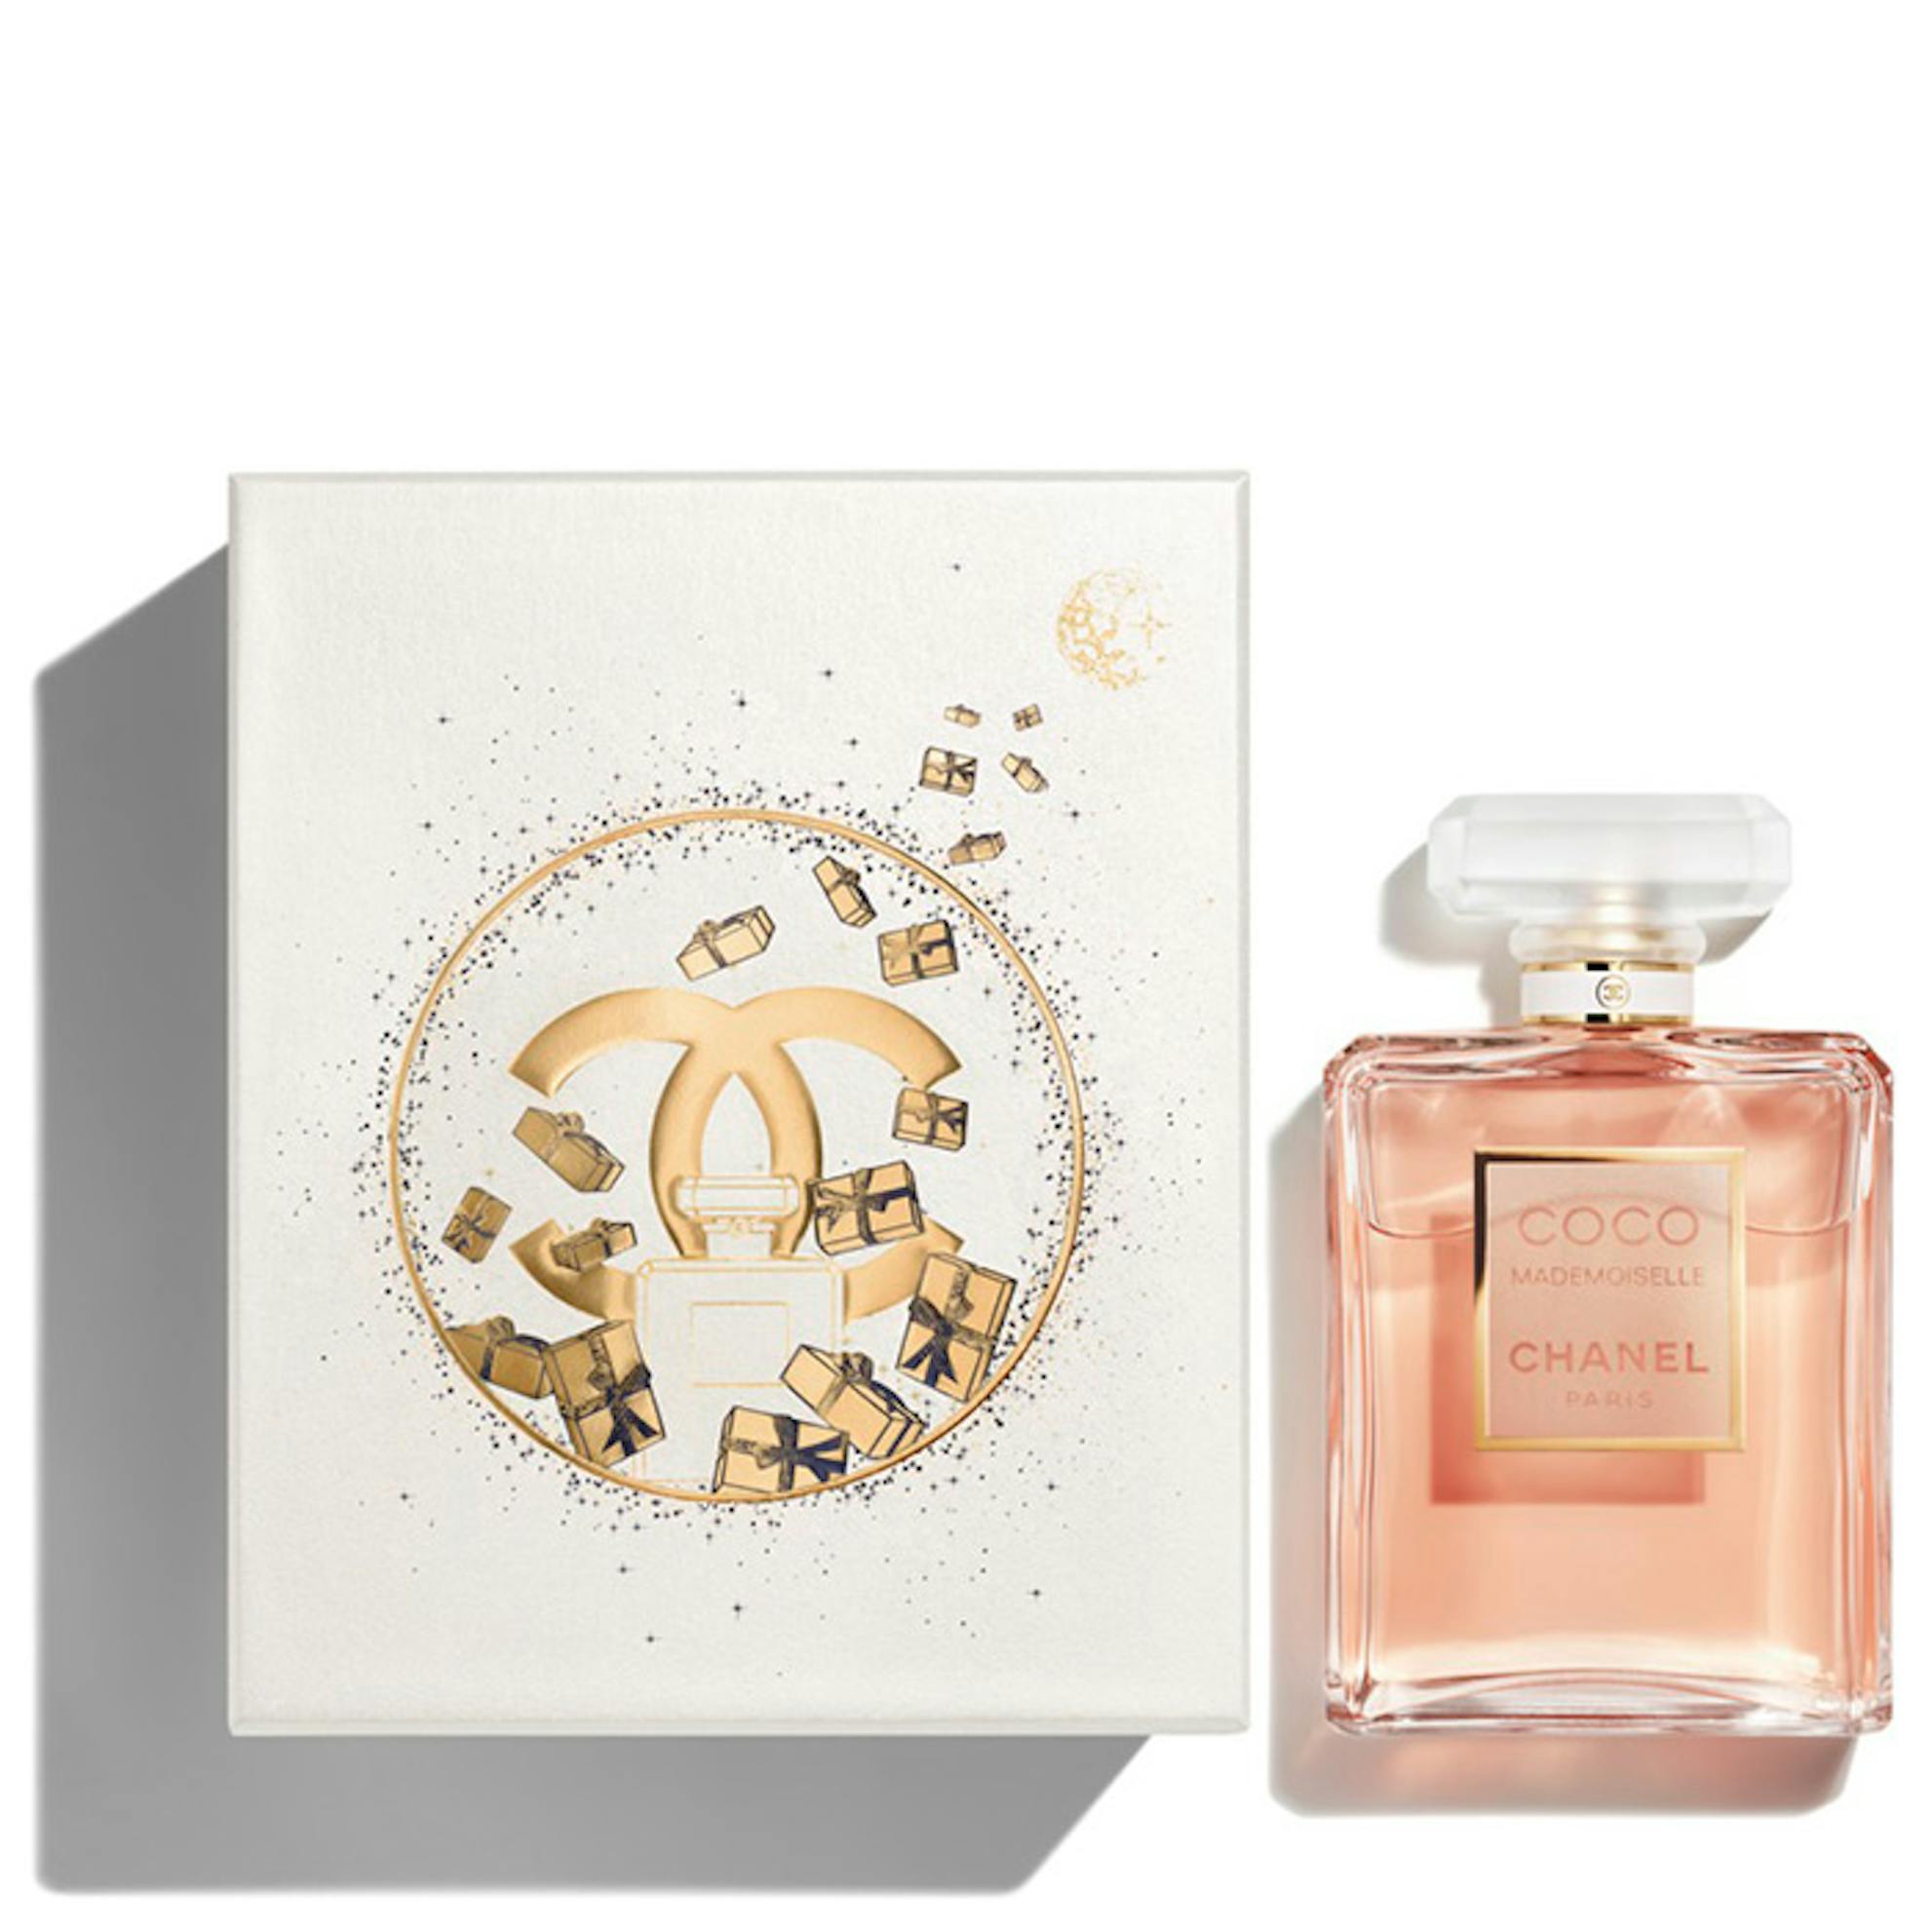 Chanel Coco Mademoiselle Eau de Parfum Intense - First Reaction